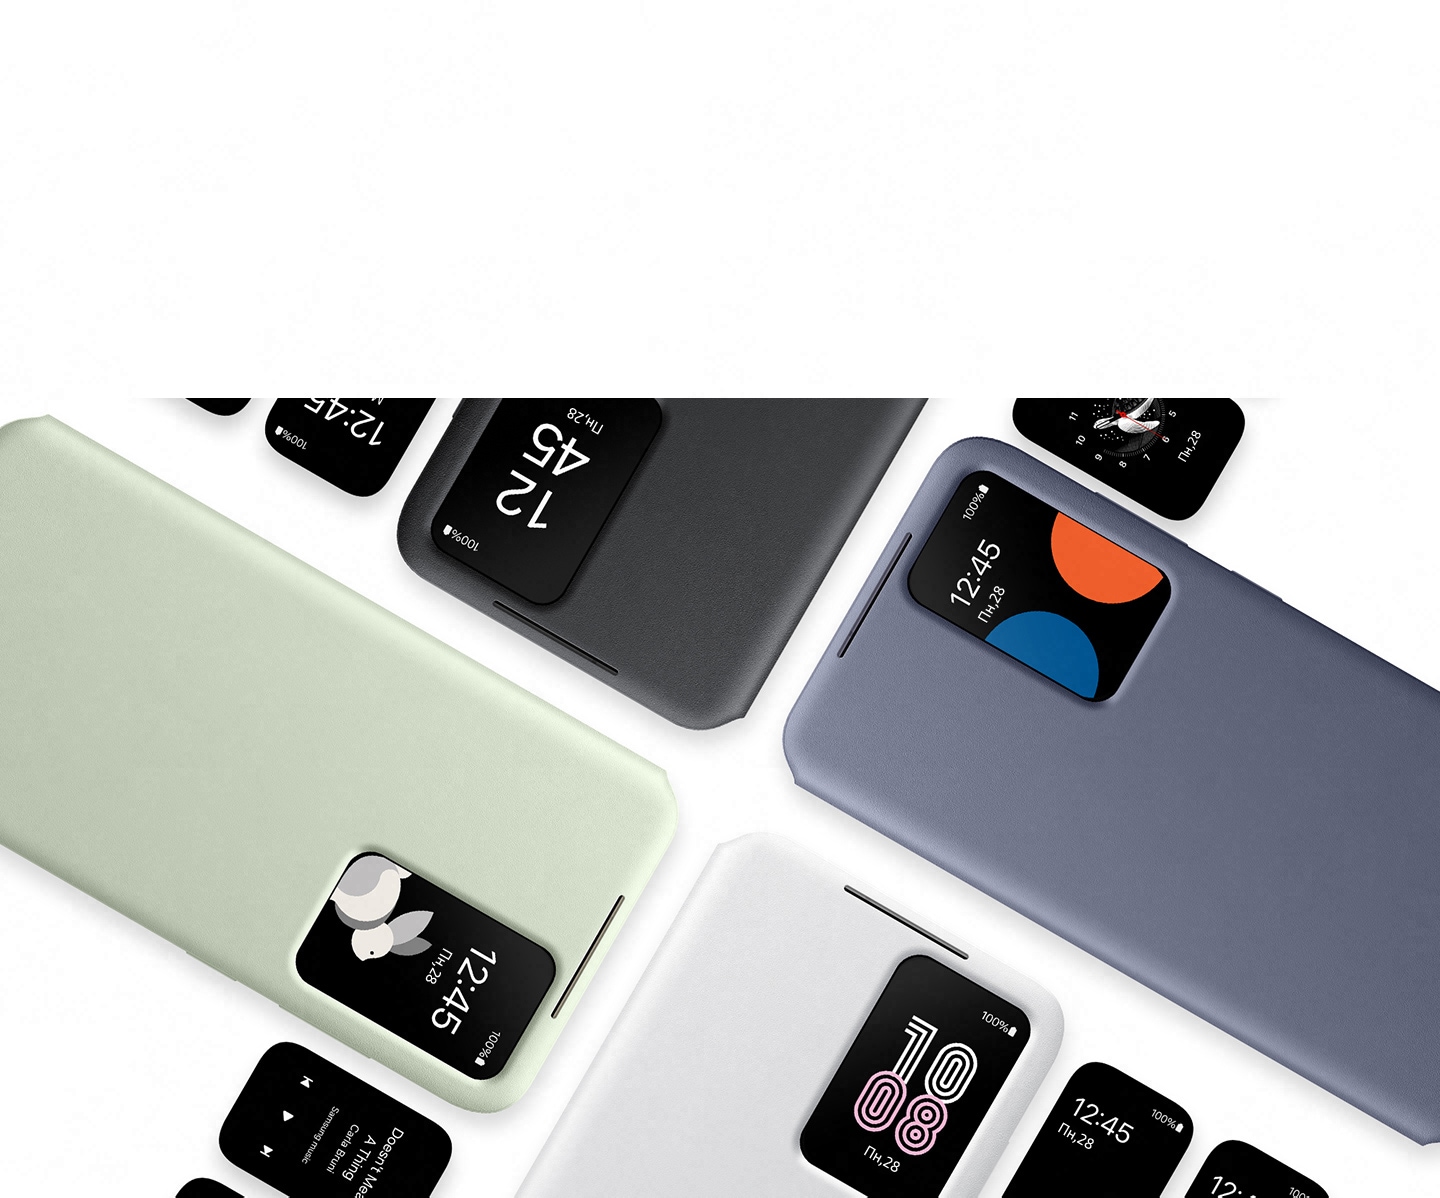 Чехлы Smart View Wallet чёрного, светло-зелёного, фиолетового и белого цветов располагаются параллельно друг другу. В окошке чехла отображаются время и дата на смартфоне Galaxy S24 без необходимости открывать крышку.